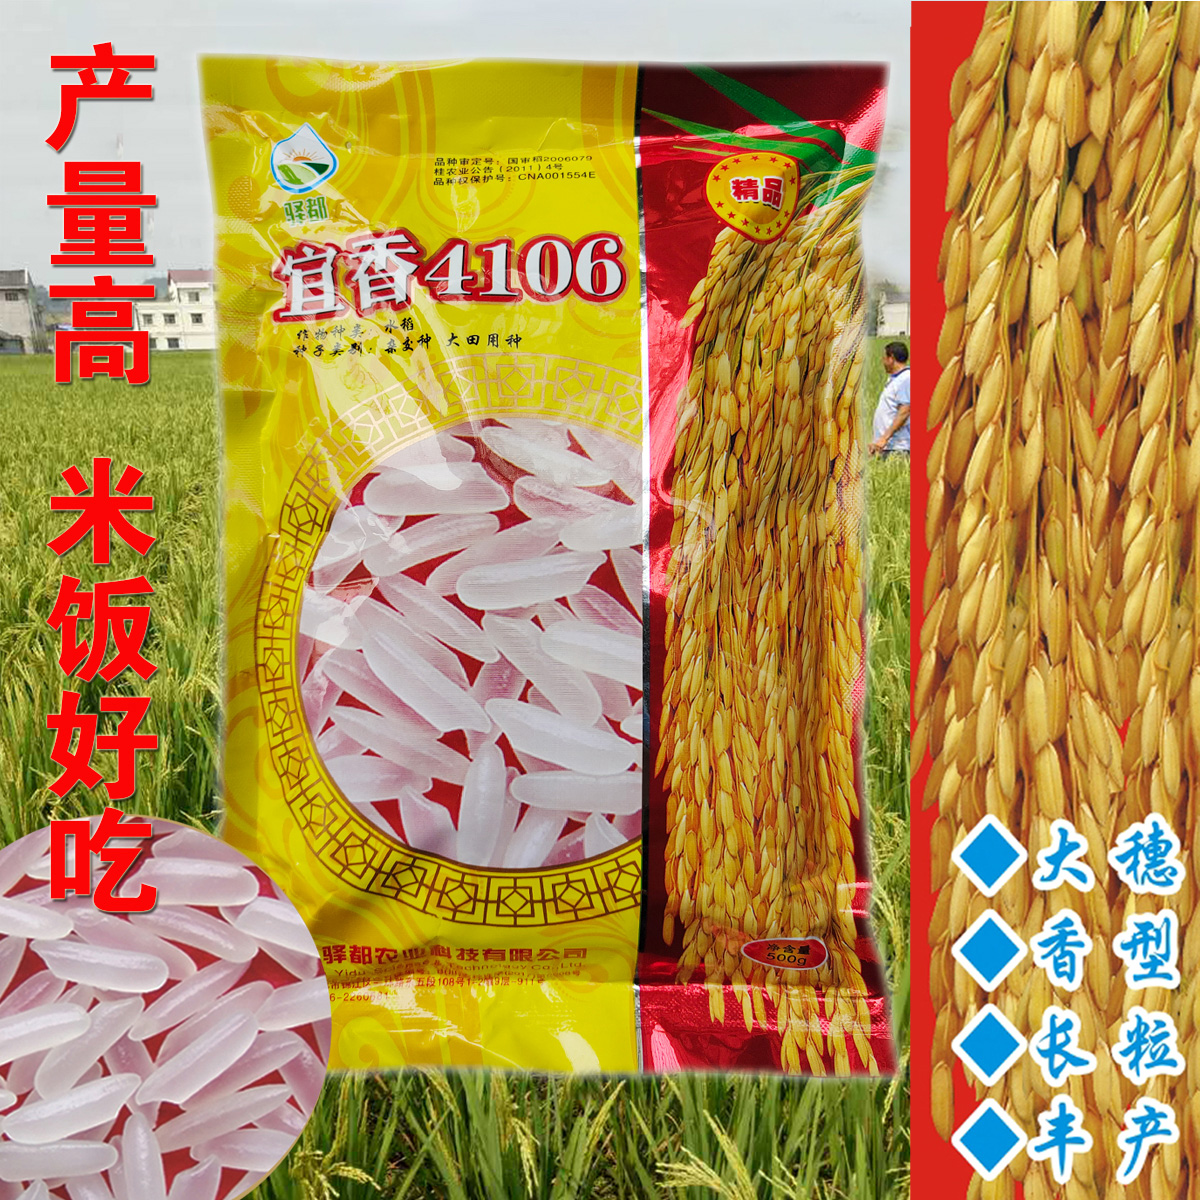 成都水稻种子航天稻中国泰米高产香稻杂交稻谷国色天香4106